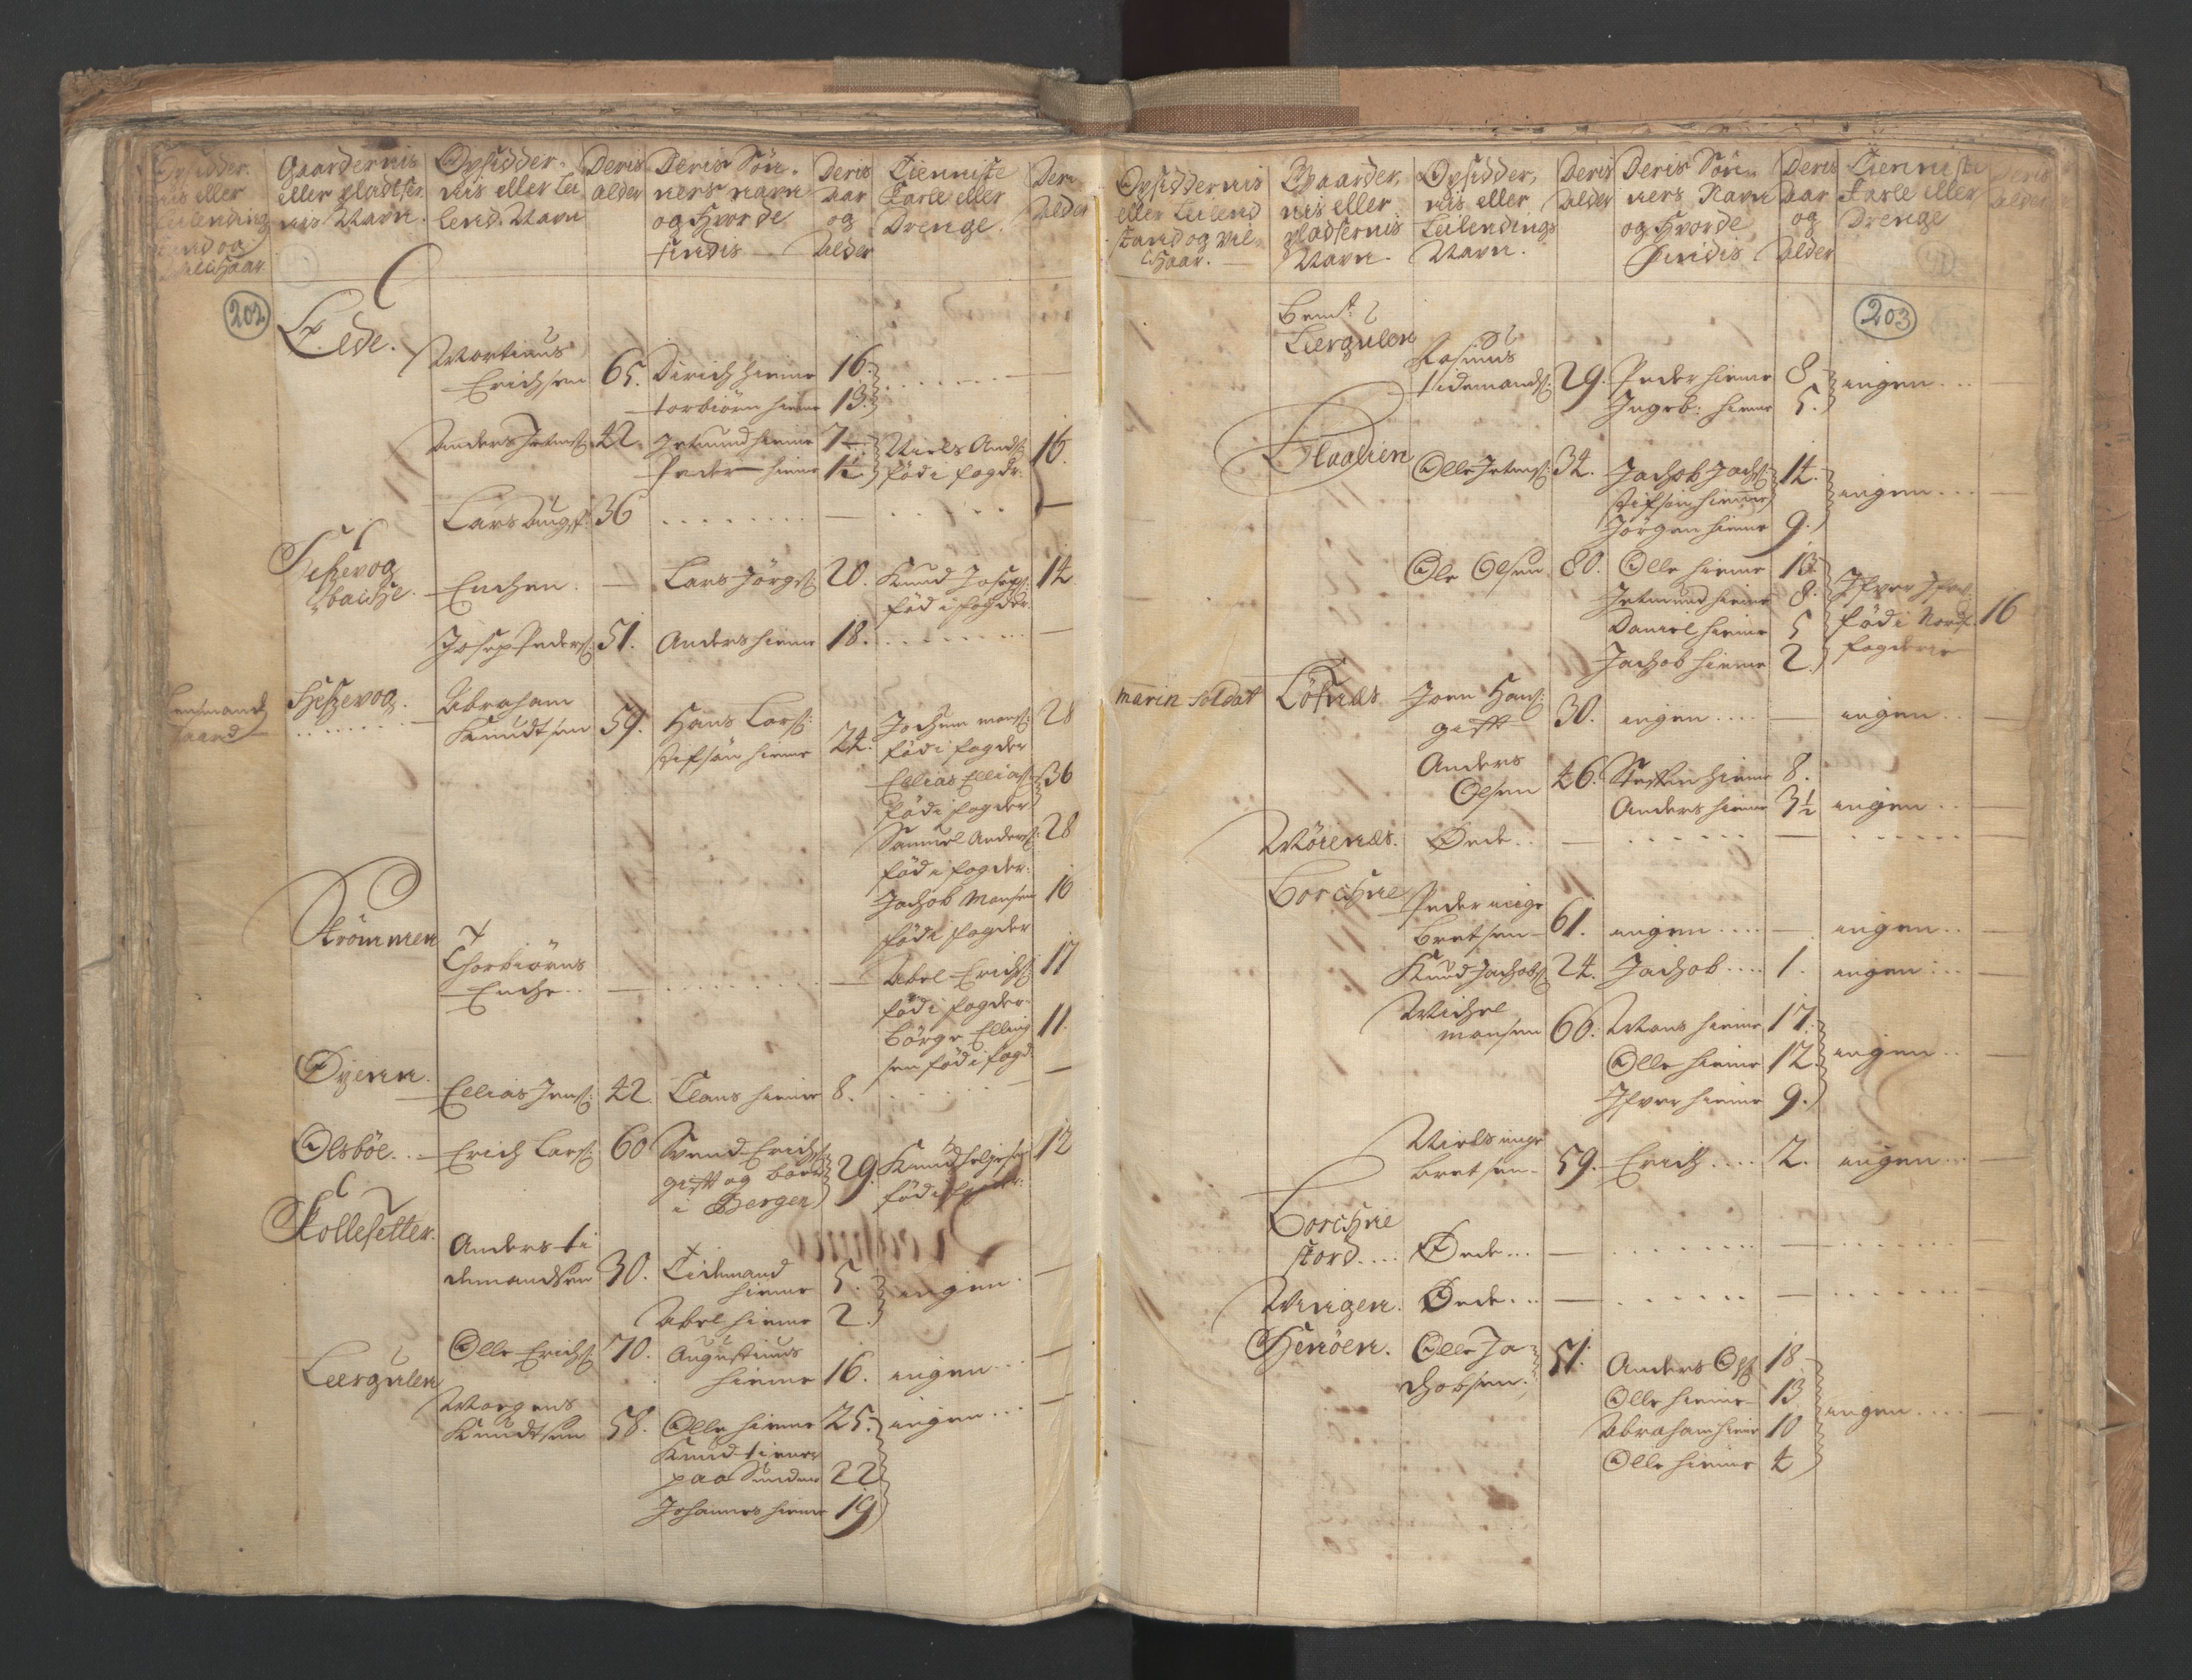 RA, Manntallet 1701, nr. 9: Sunnfjord fogderi, Nordfjord fogderi og Svanø birk, 1701, s. 202-203